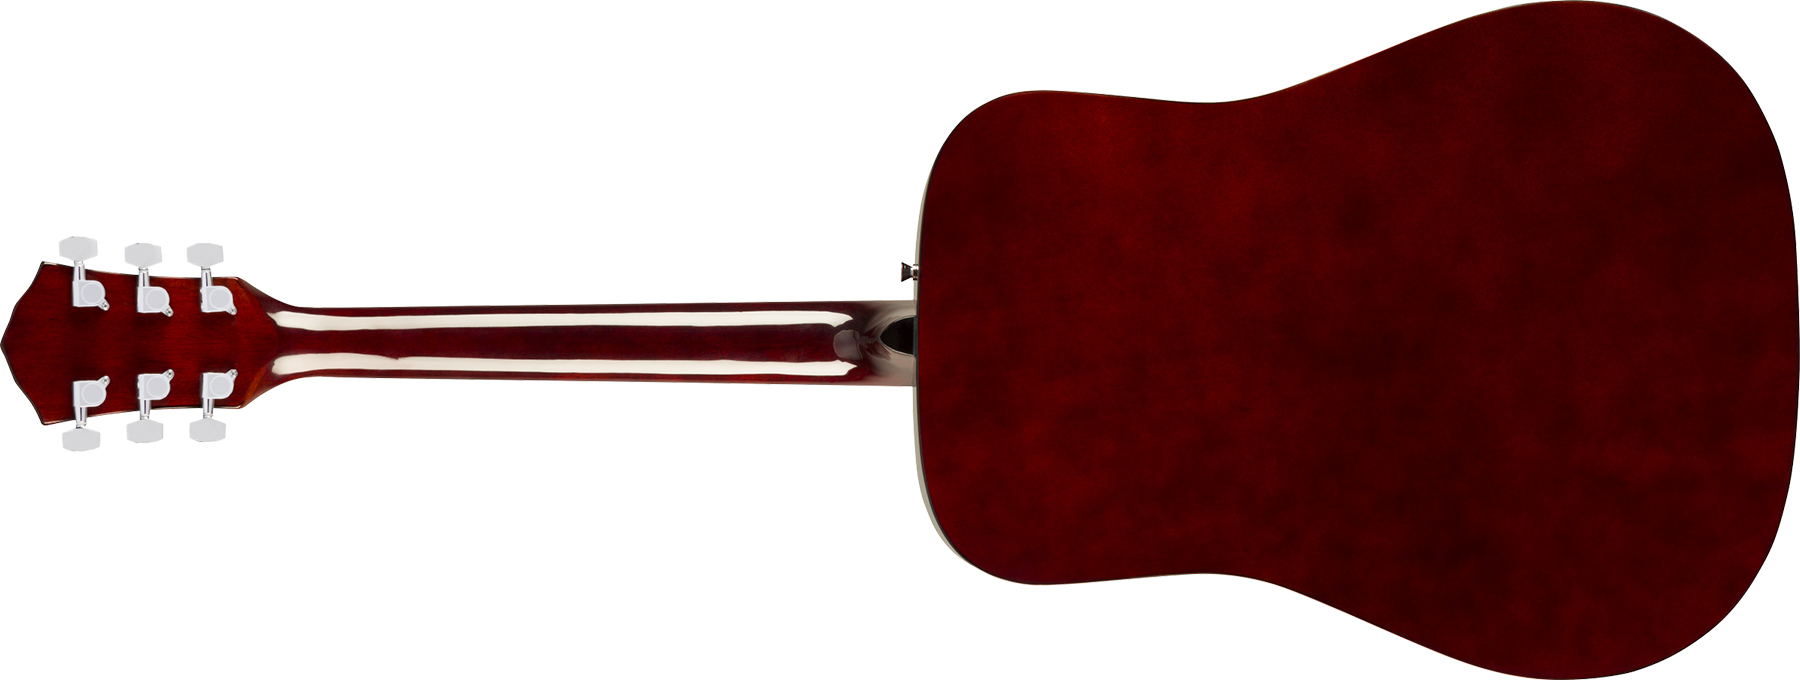 Fender Fa-125 Dreadnought 2020 Epicea Acajou Wal - Natural - Guitarra acústica & electro - Variation 1